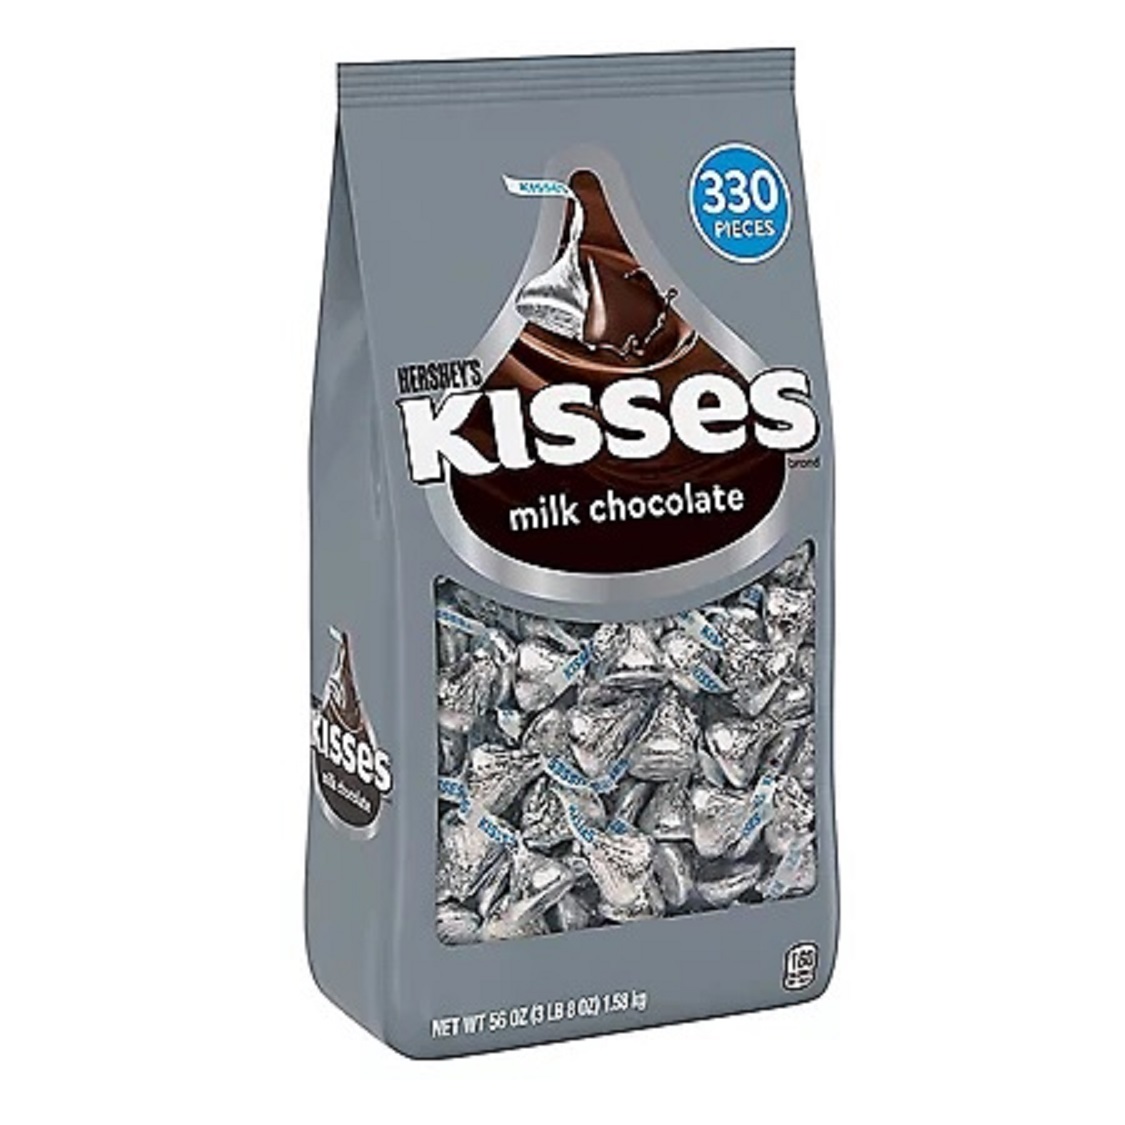 Socola sữa Hershey s Kisses Milk Chocolate gói 1550gr của Mỹ gồm 330 viên